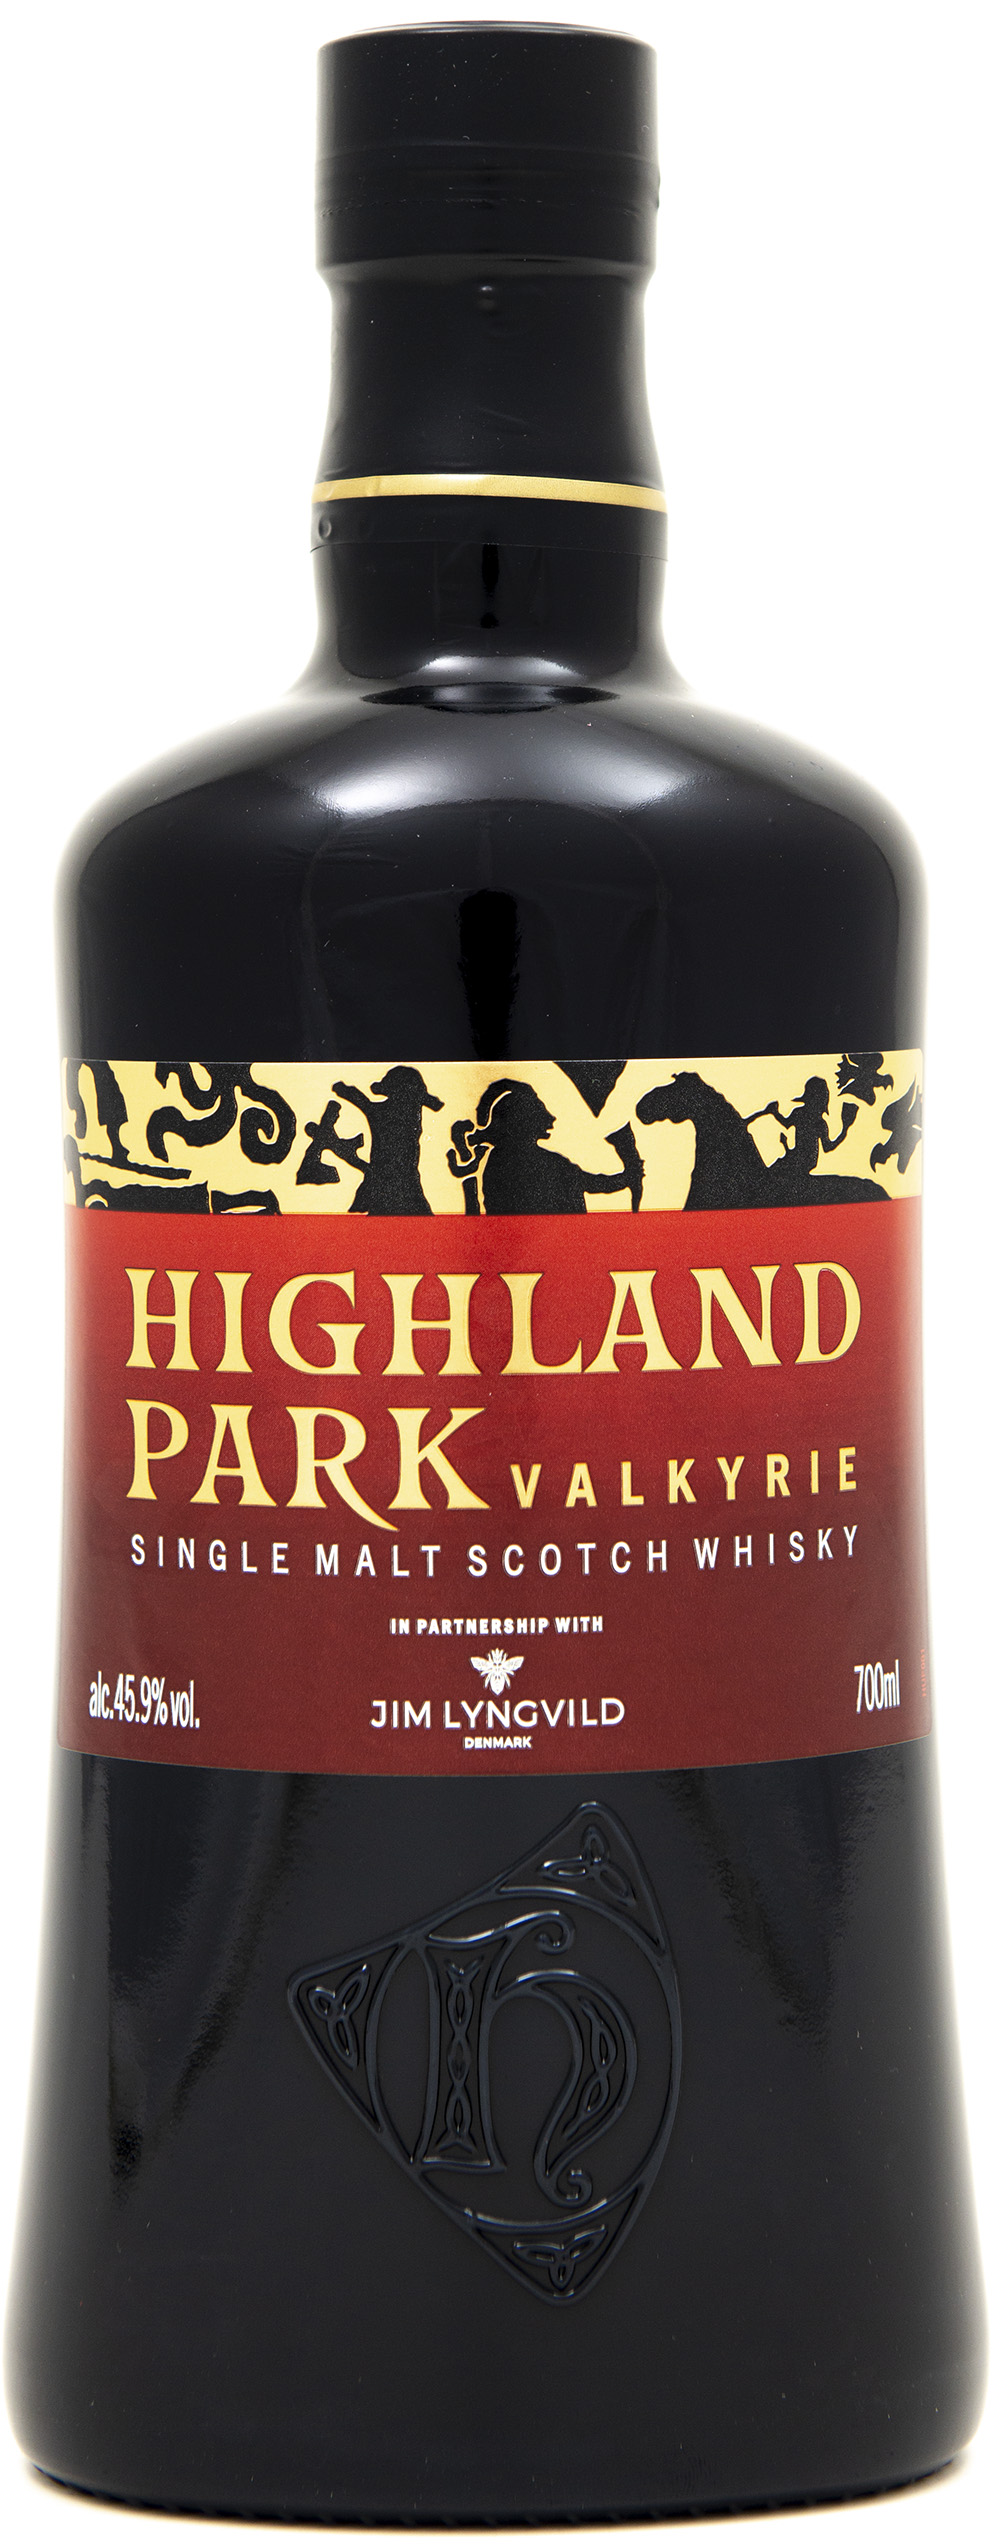 Billede: DSC_4500 - Highland Park Valkyrie - bottle front.jpg